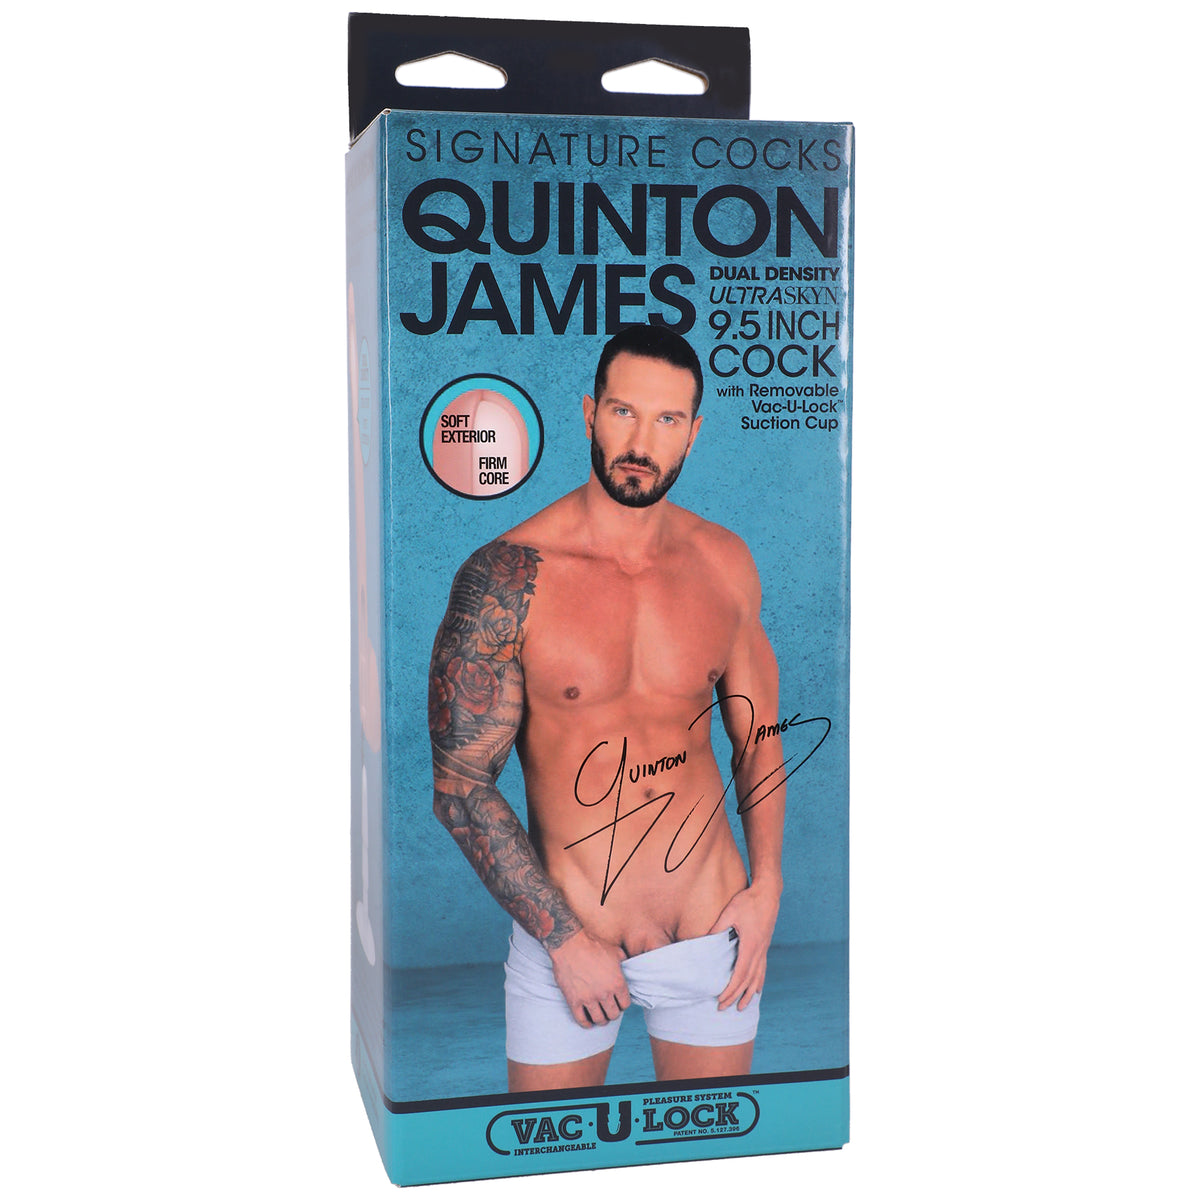 Signature Cocks - Quinton James - Polla Ultraskyn de 9,5 pulgadas con ventosa extraíble Vac-U-Lock